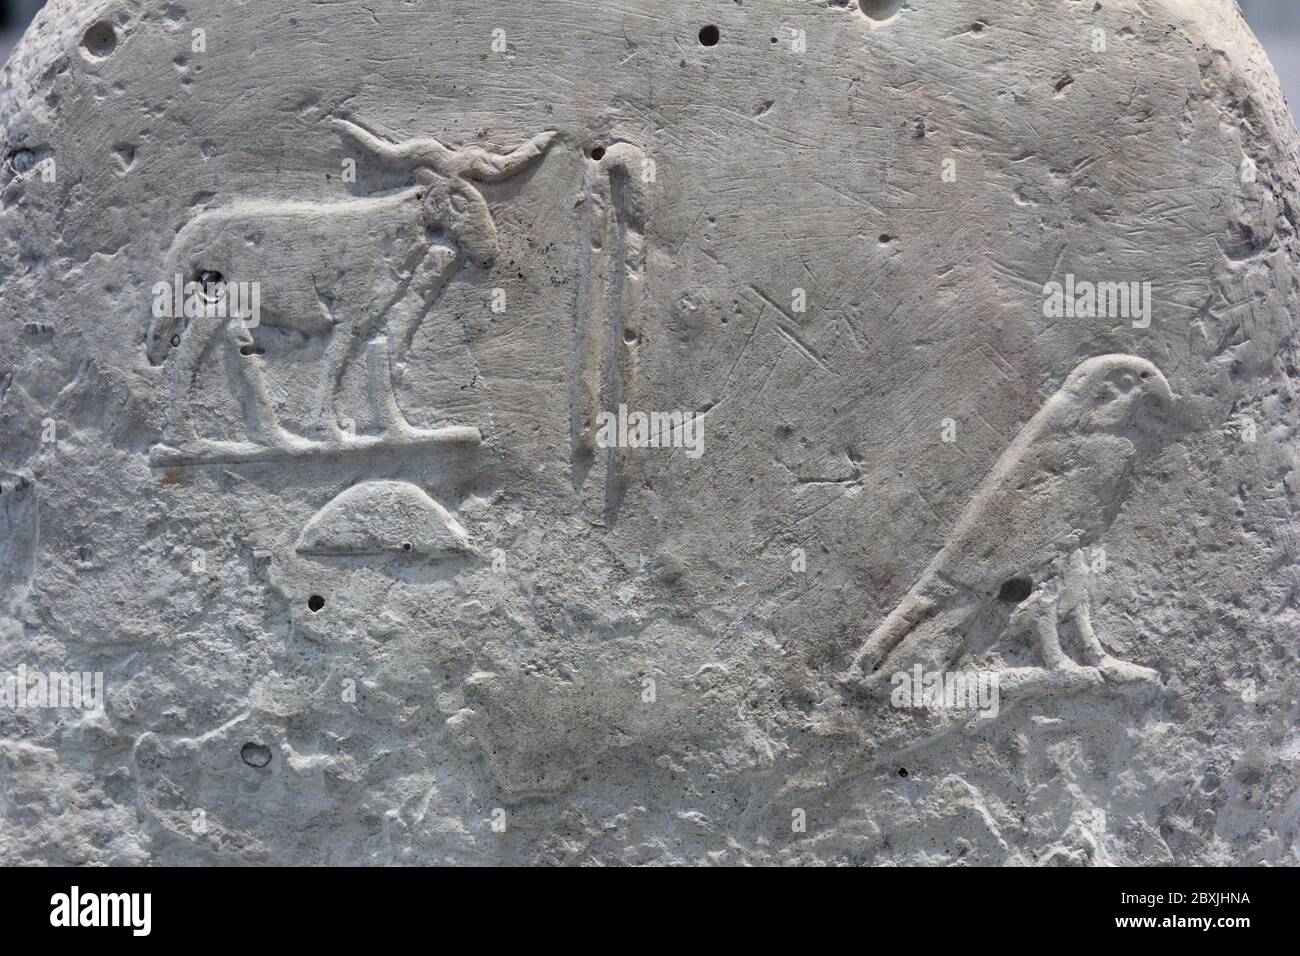 Grabkunst Stele mit hieroglyphischen Inschriften. Etwa 3000 v. Chr.. Kalkstein. Von Abydos, Ägypten. Das Museum des Louvre in Lens, Frankreich. Stockfoto